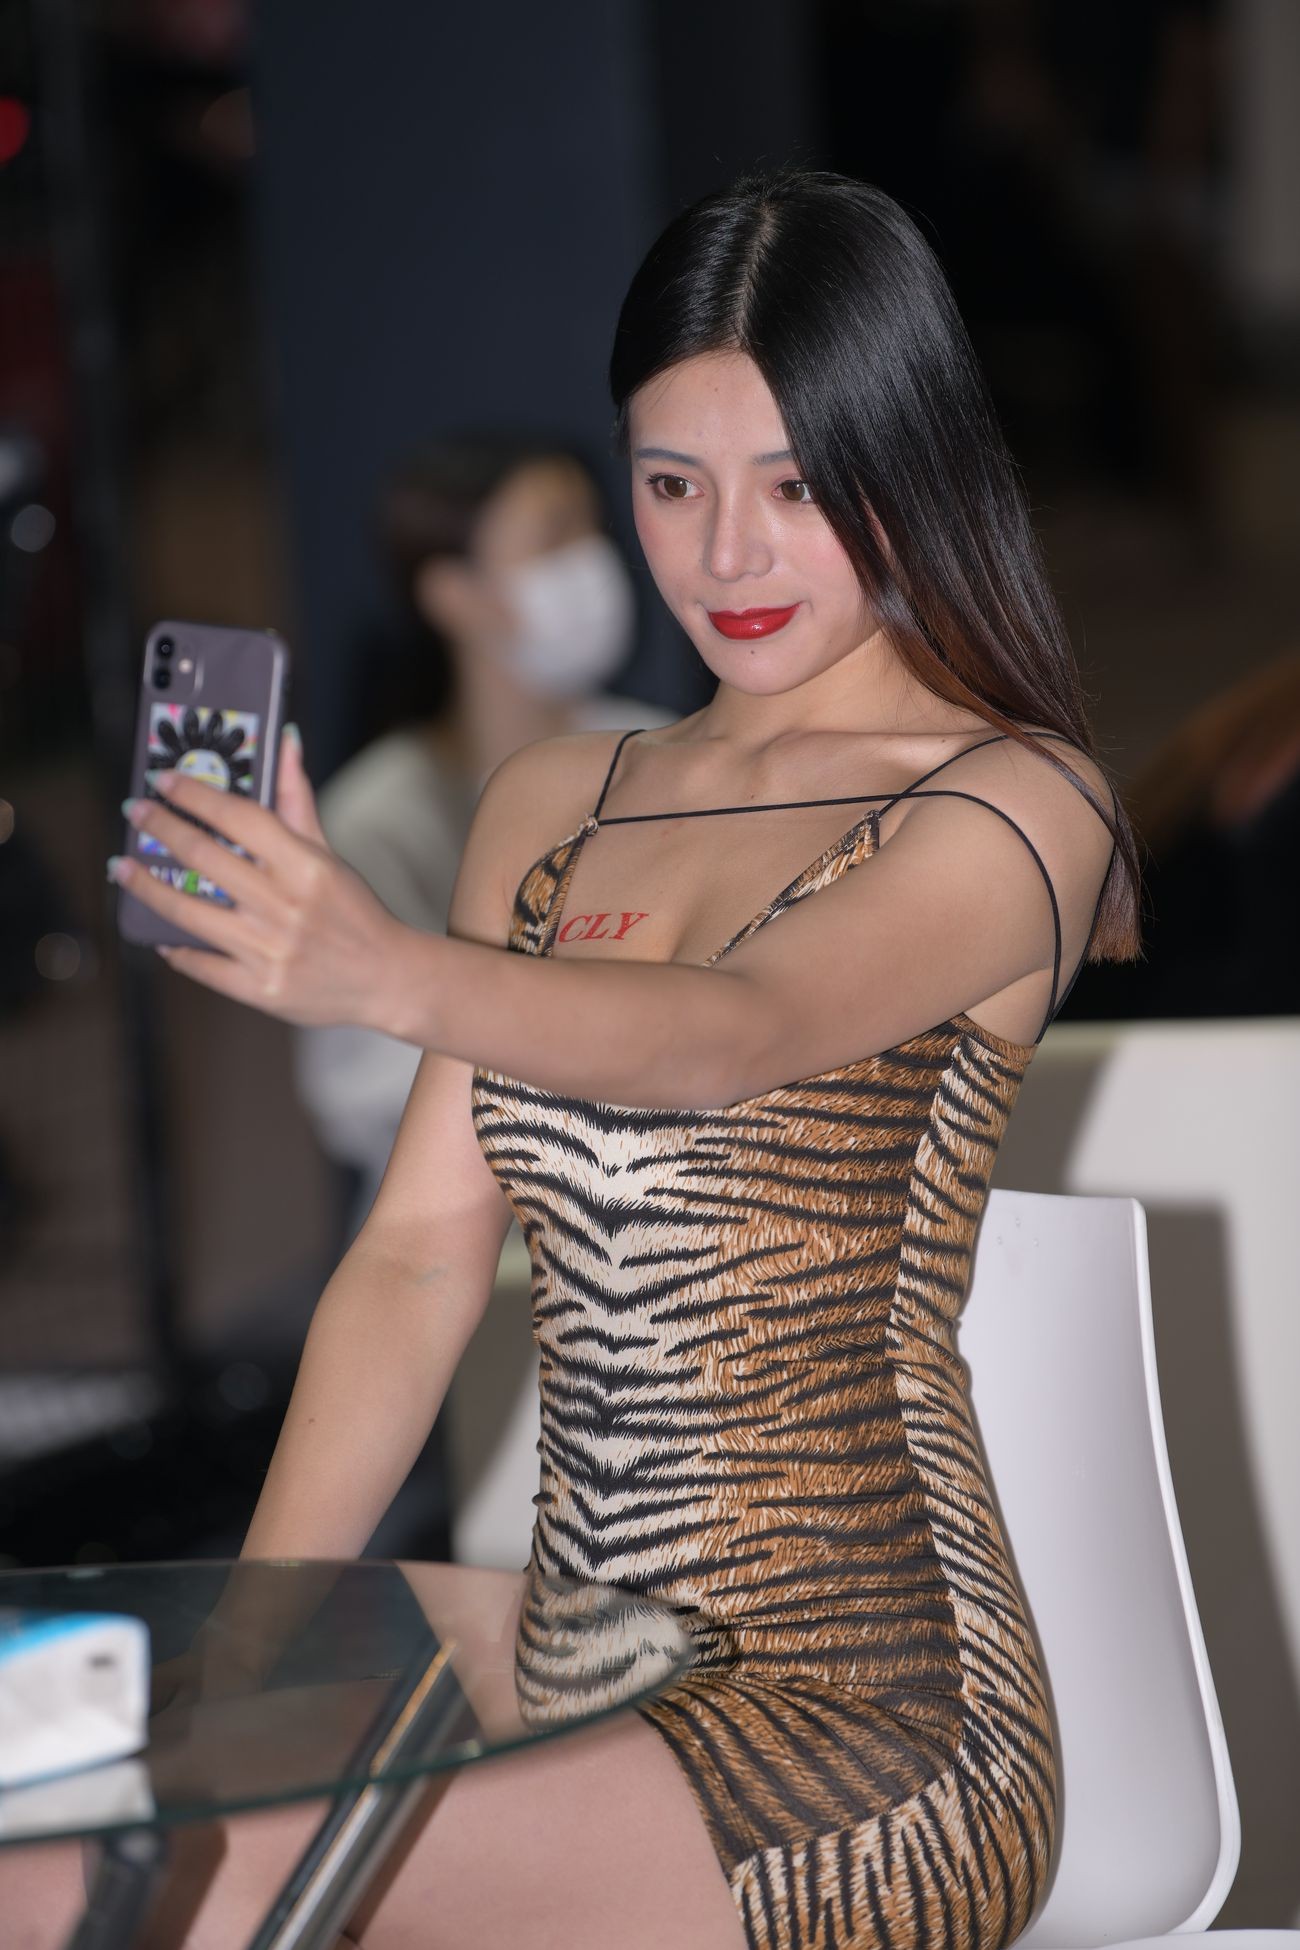 视觉冲击街拍作品性感的豹纹吊带裙美女 (15)